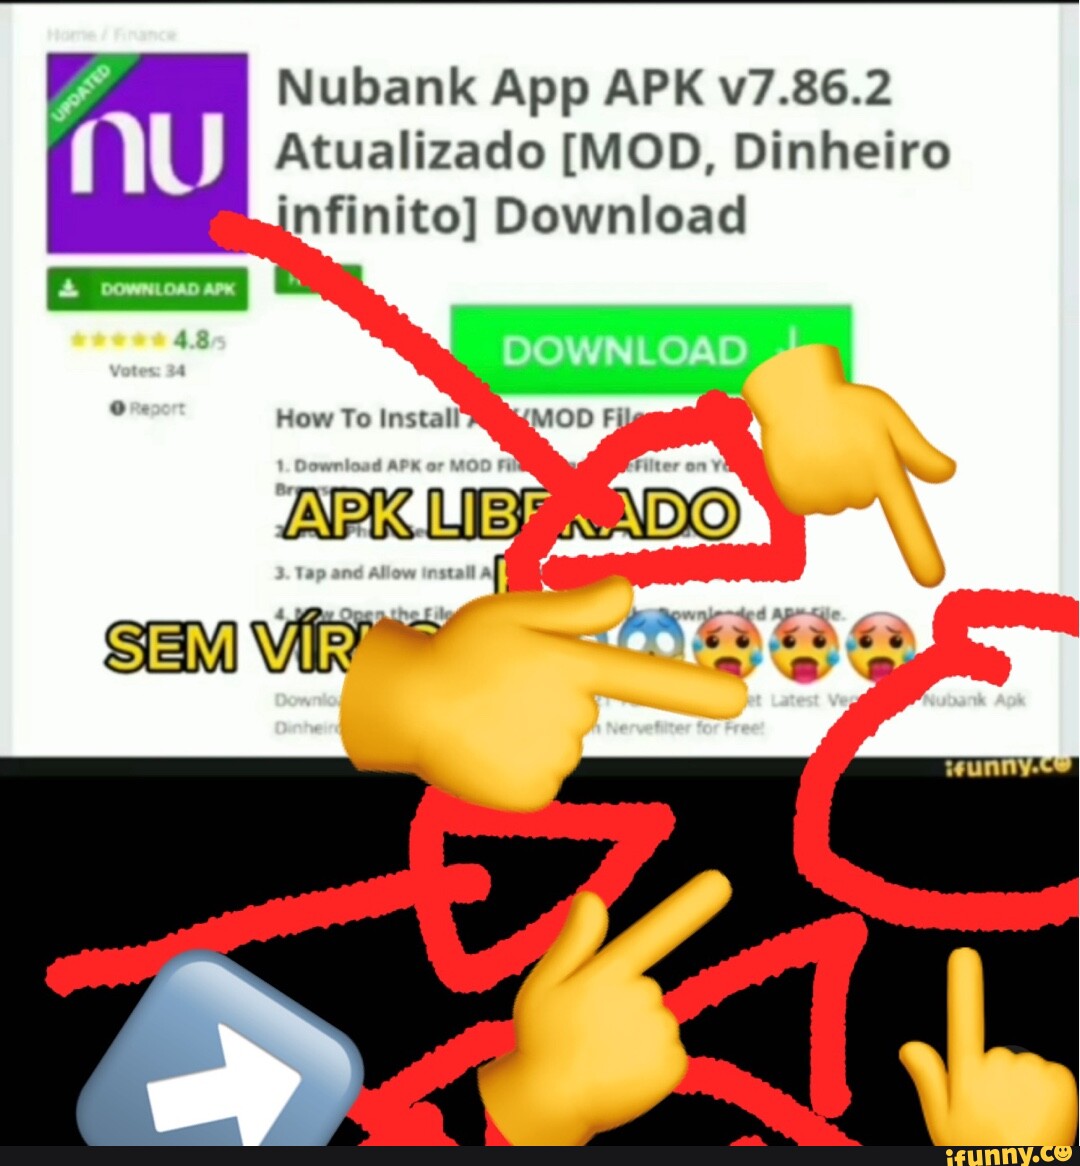 Nubank App APK v7.86.2 NU Atualizado [MOD, Dinheiro infinito